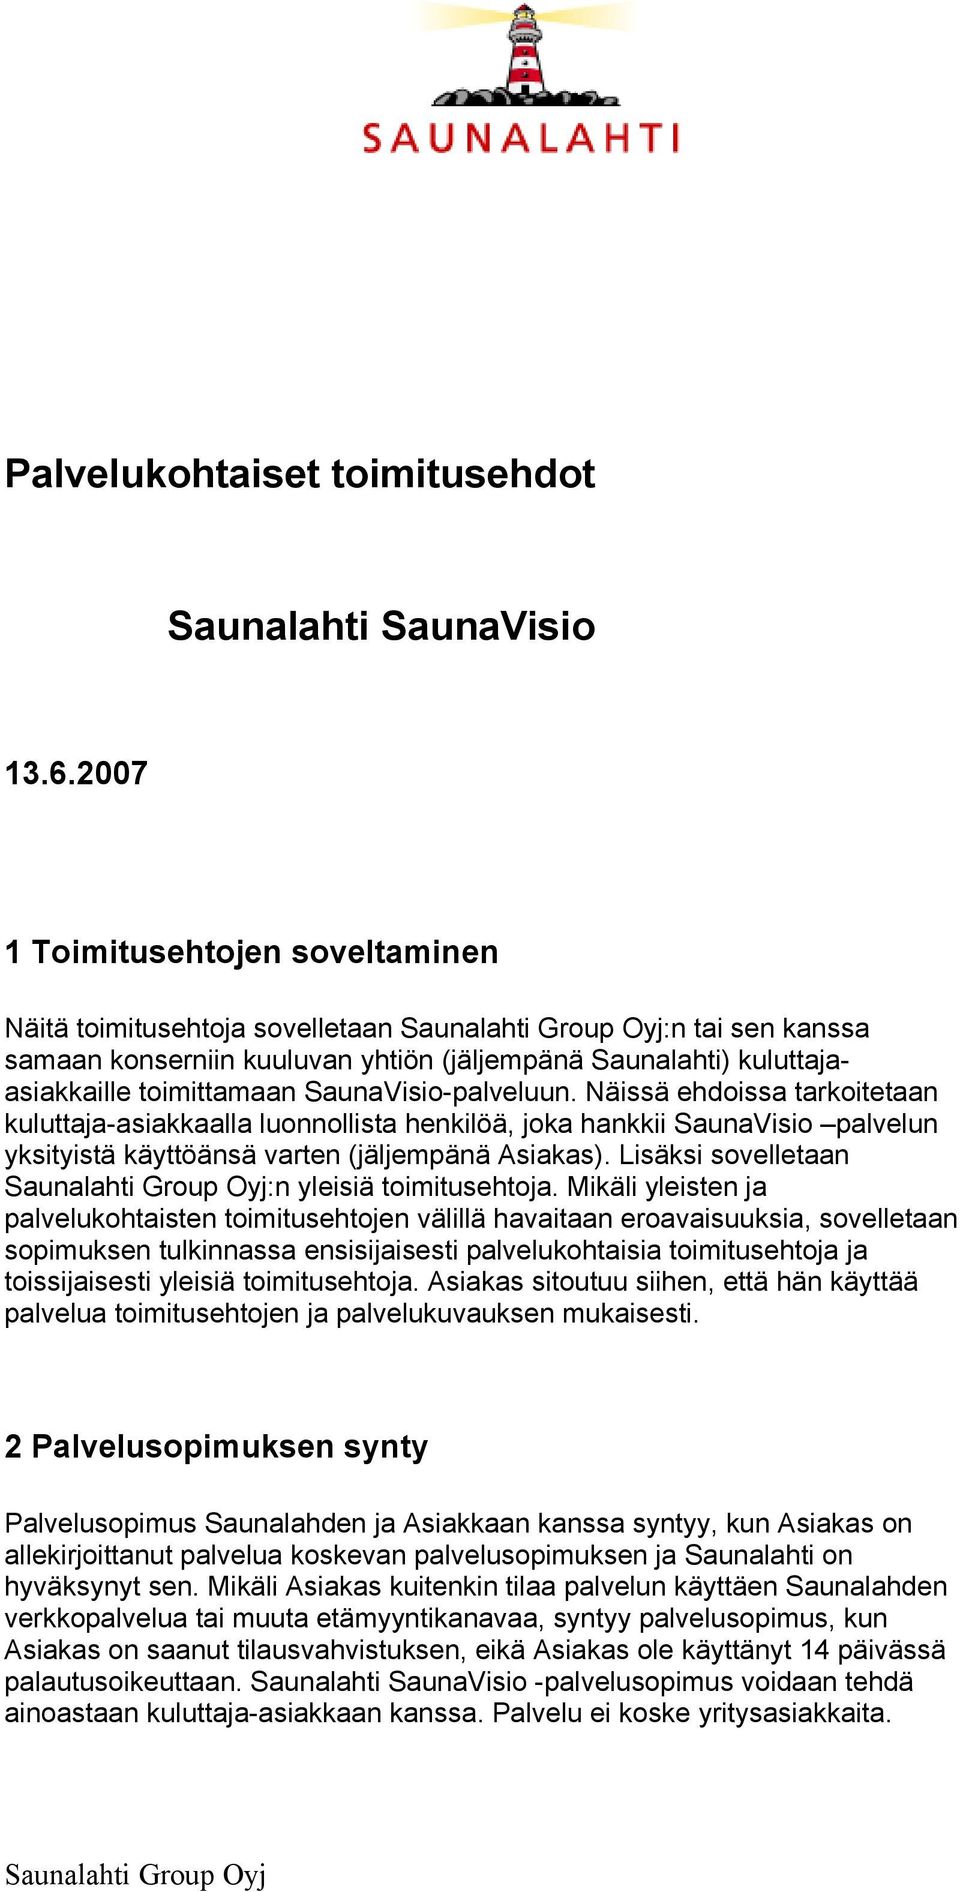 Näissä ehdoissa tarkoitetaan kuluttaja-asiakkaalla luonnollista henkilöä, joka hankkii SaunaVisio palvelun yksityistä käyttöänsä varten (jäljempänä Asiakas).